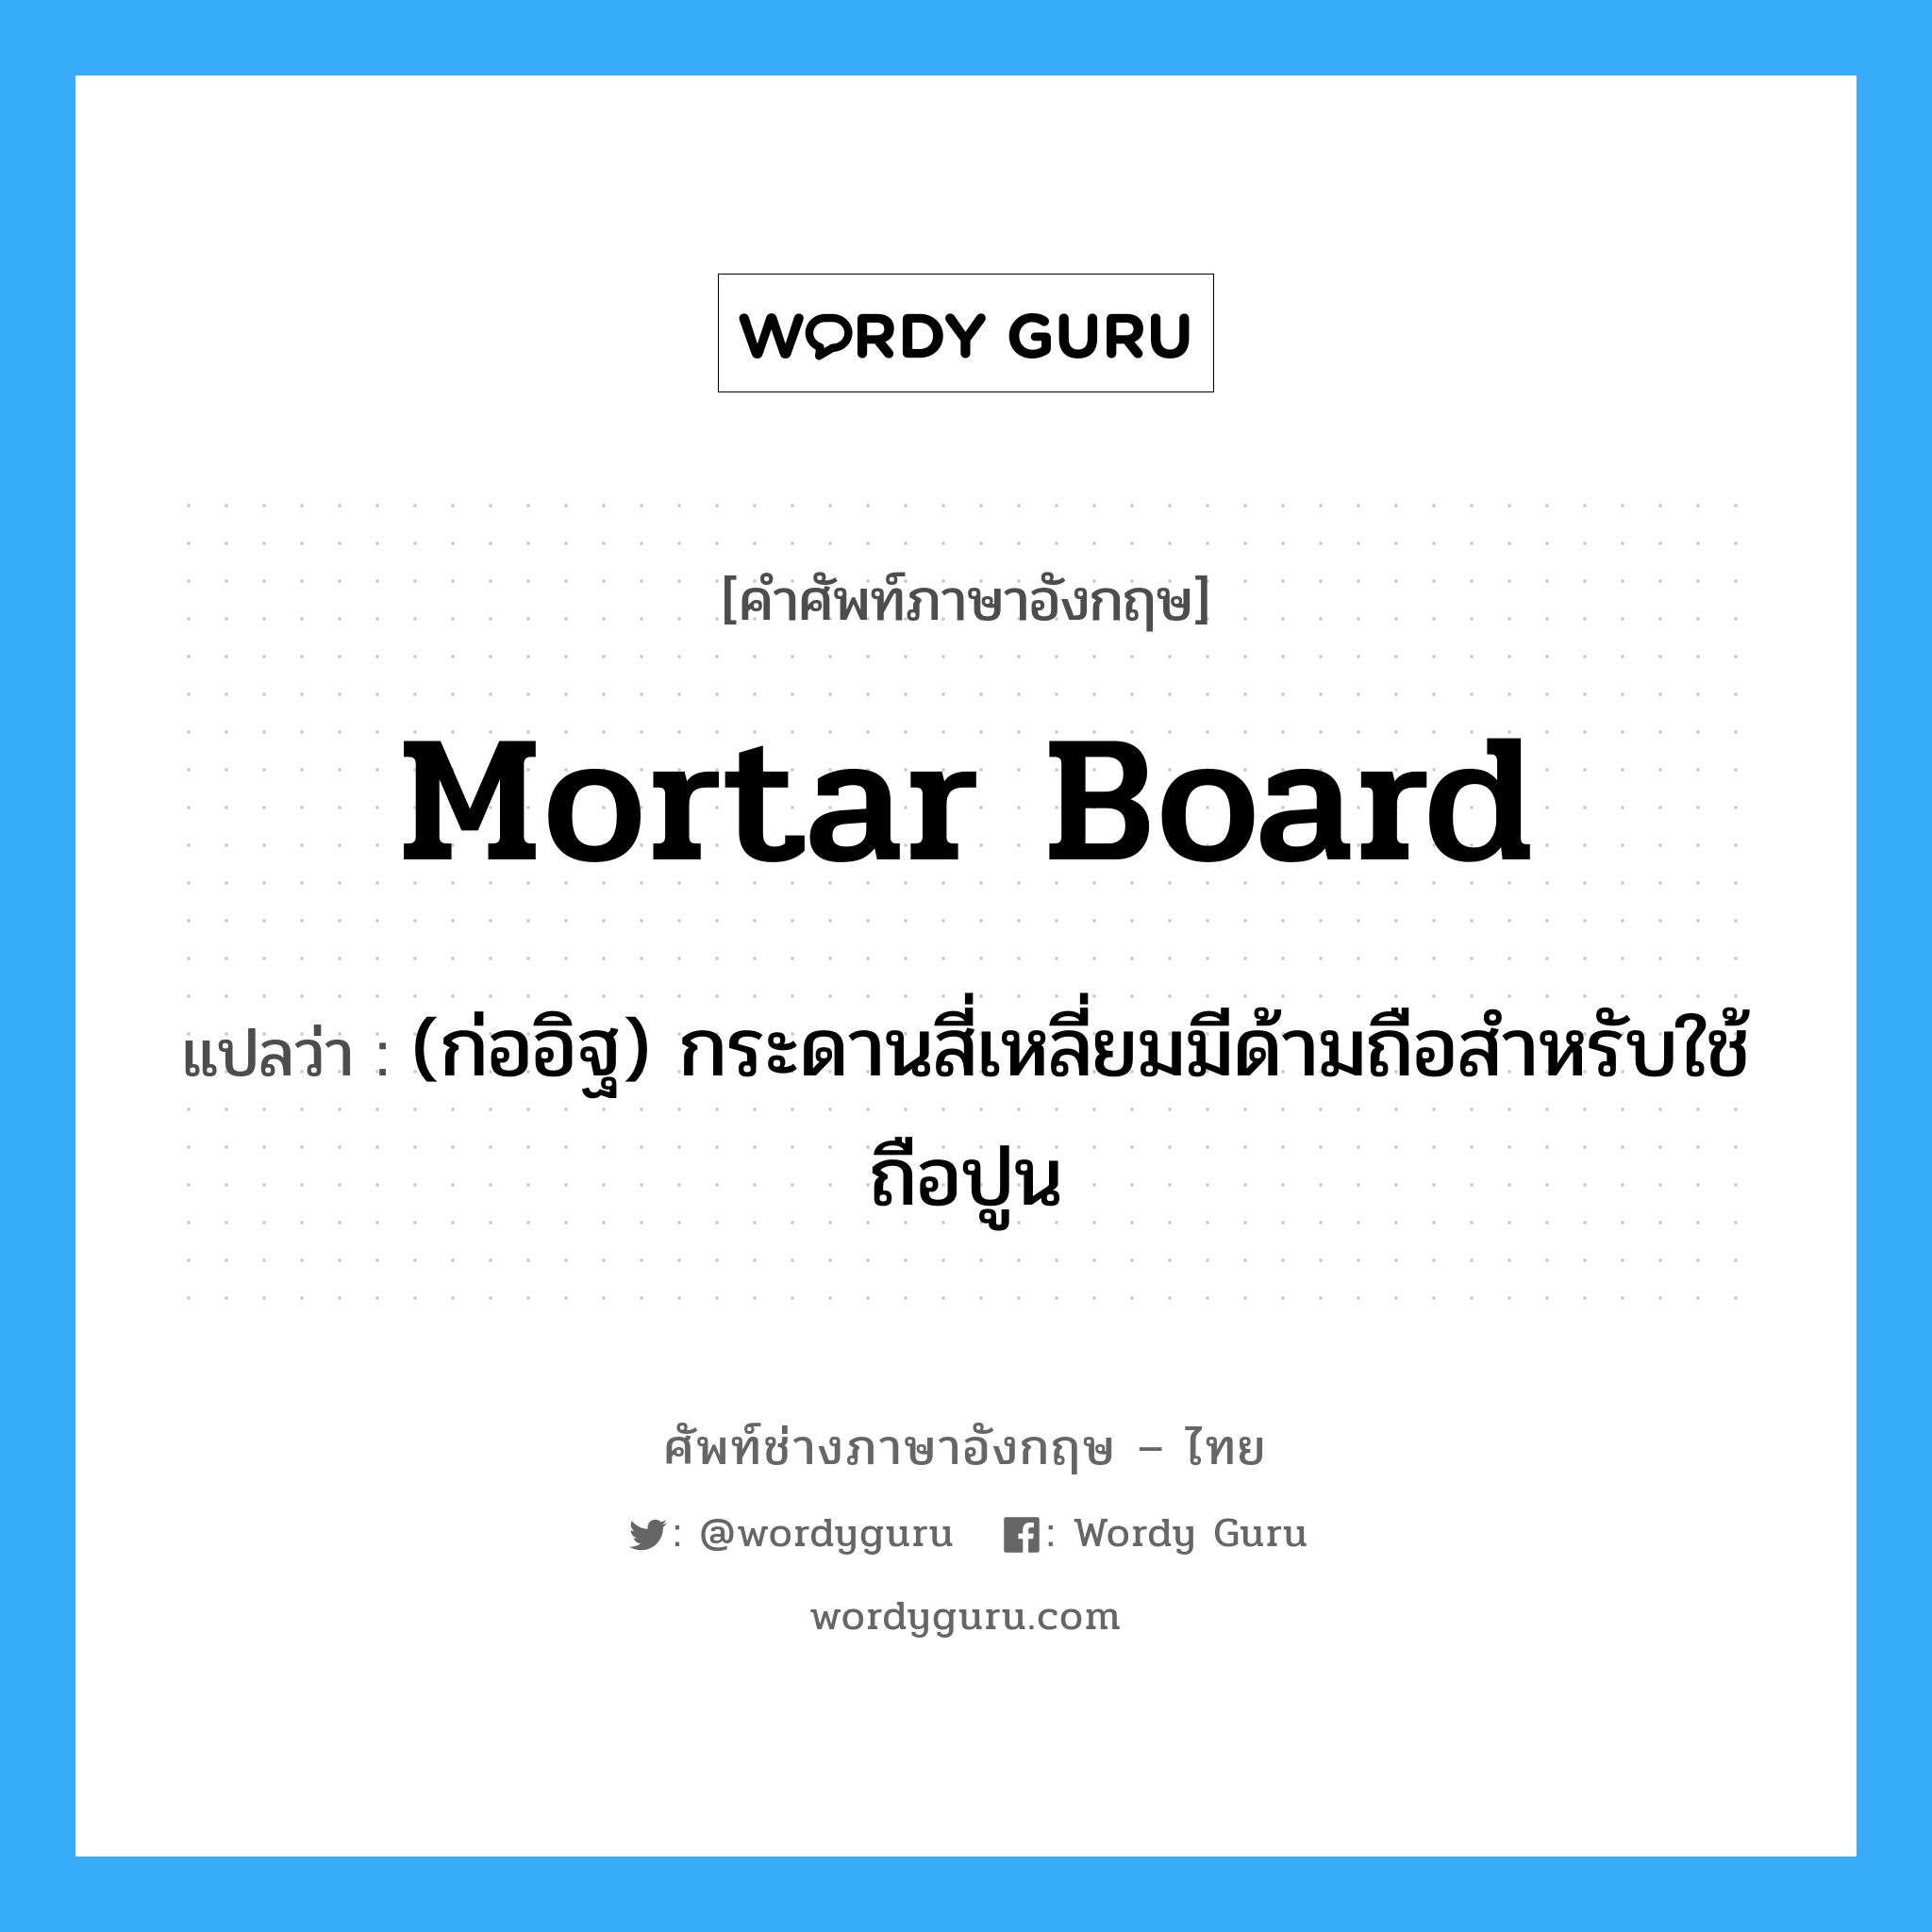 mortar-board แปลว่า?, คำศัพท์ช่างภาษาอังกฤษ - ไทย mortar board คำศัพท์ภาษาอังกฤษ mortar board แปลว่า (ก่ออิฐ) กระดานสี่เหลี่ยมมีด้ามถือสำหรับใช้ถือปูน